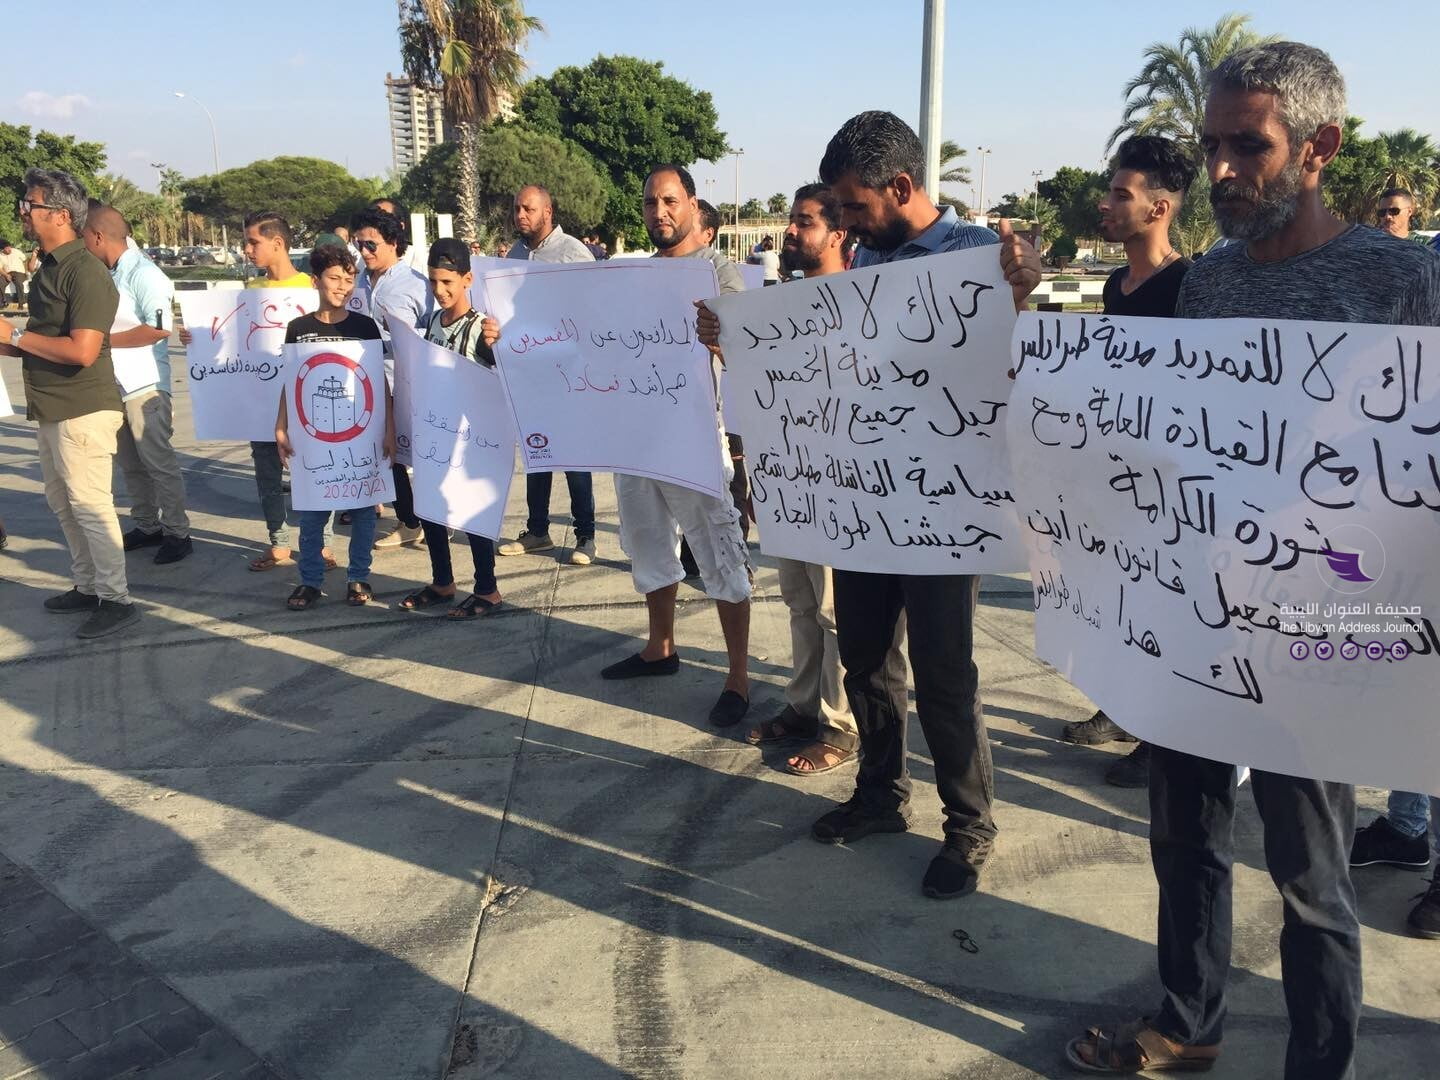 وقفة احتجاجية ببنغازي تطالب بمحاربة الفساد في ليبيا - 120075444 112030340650460 1476487457180412835 o 1